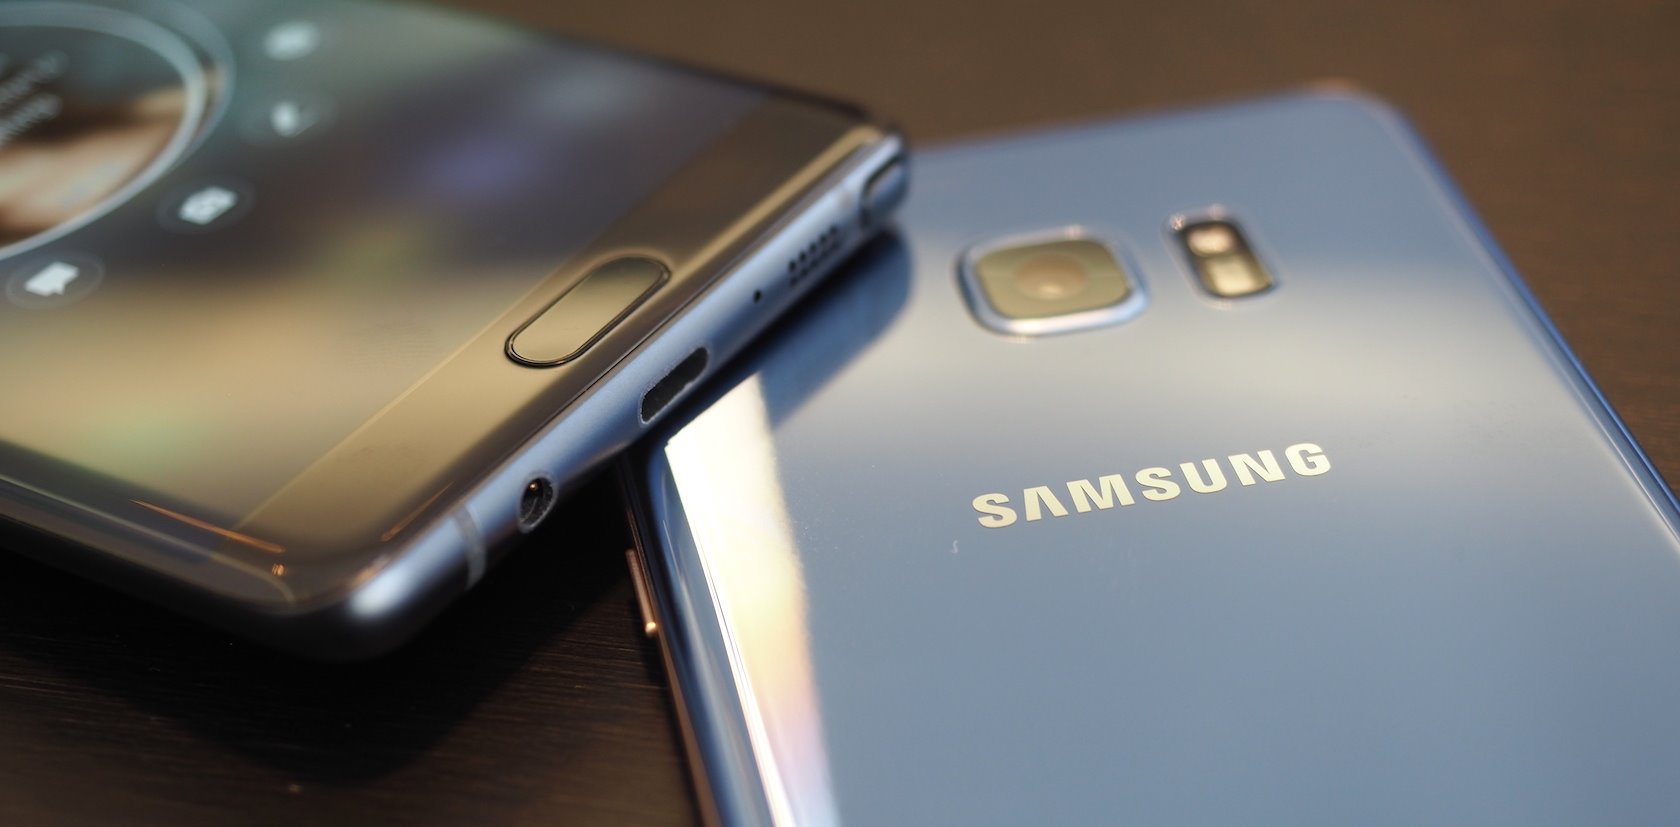 Novità Samsung Galaxy Note7, prezzo di rilascio, specifiche, immagini